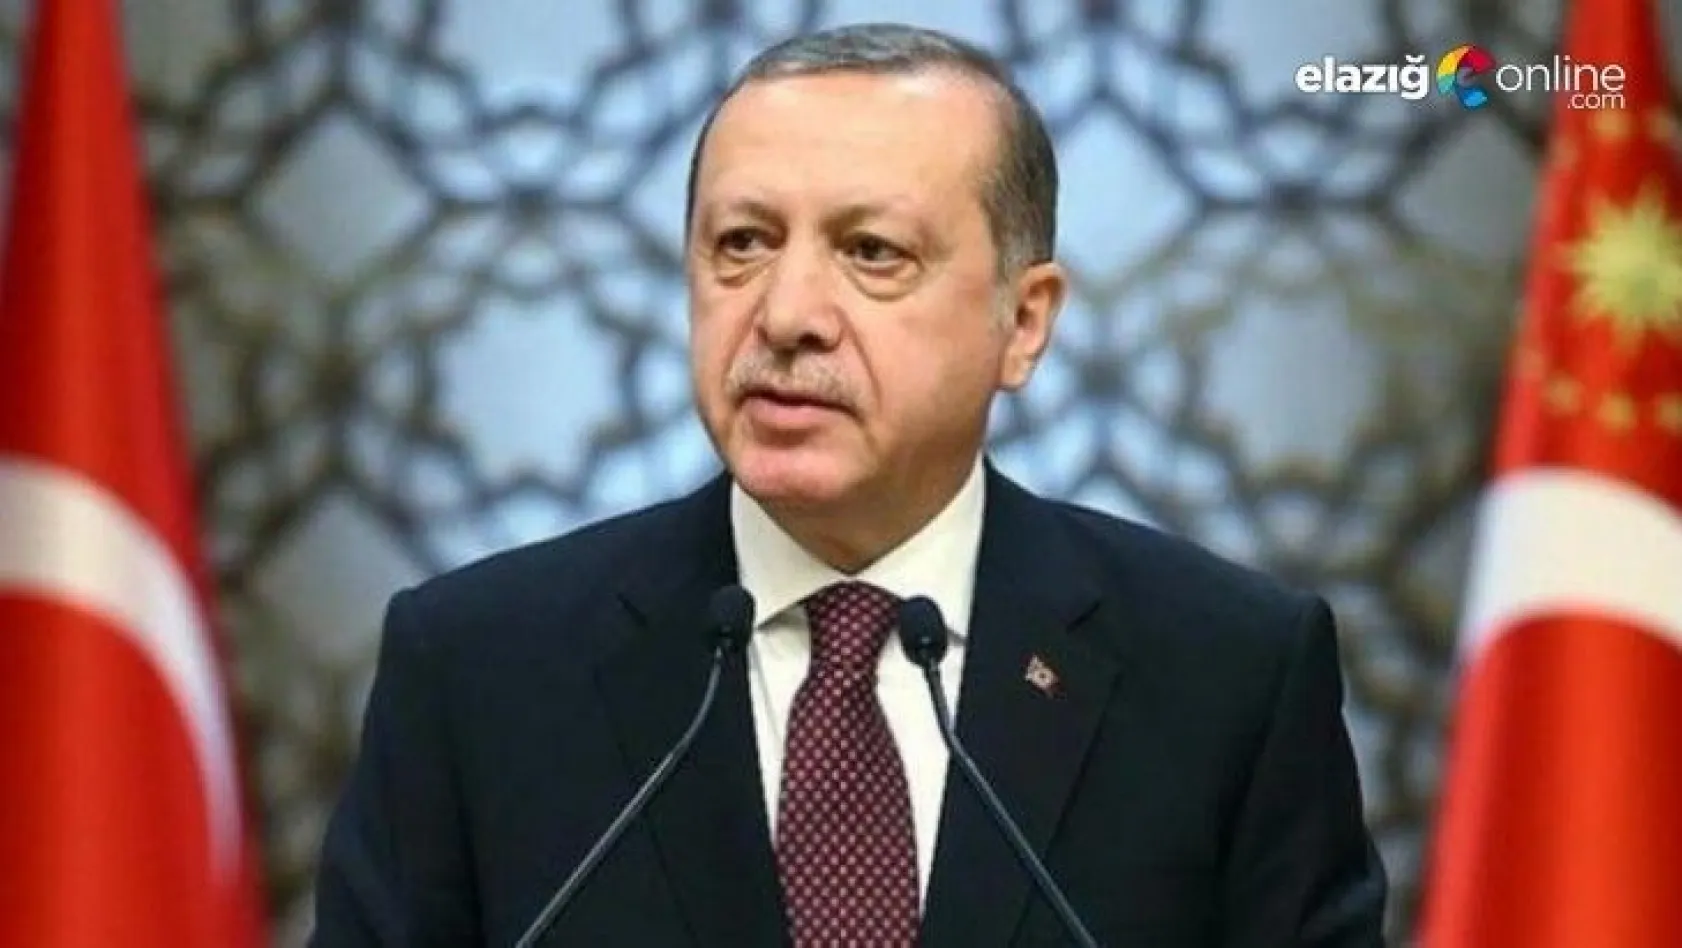 Cumhurbaşkanı Erdoğan: Yüksek faize kesinlikle karşıyım